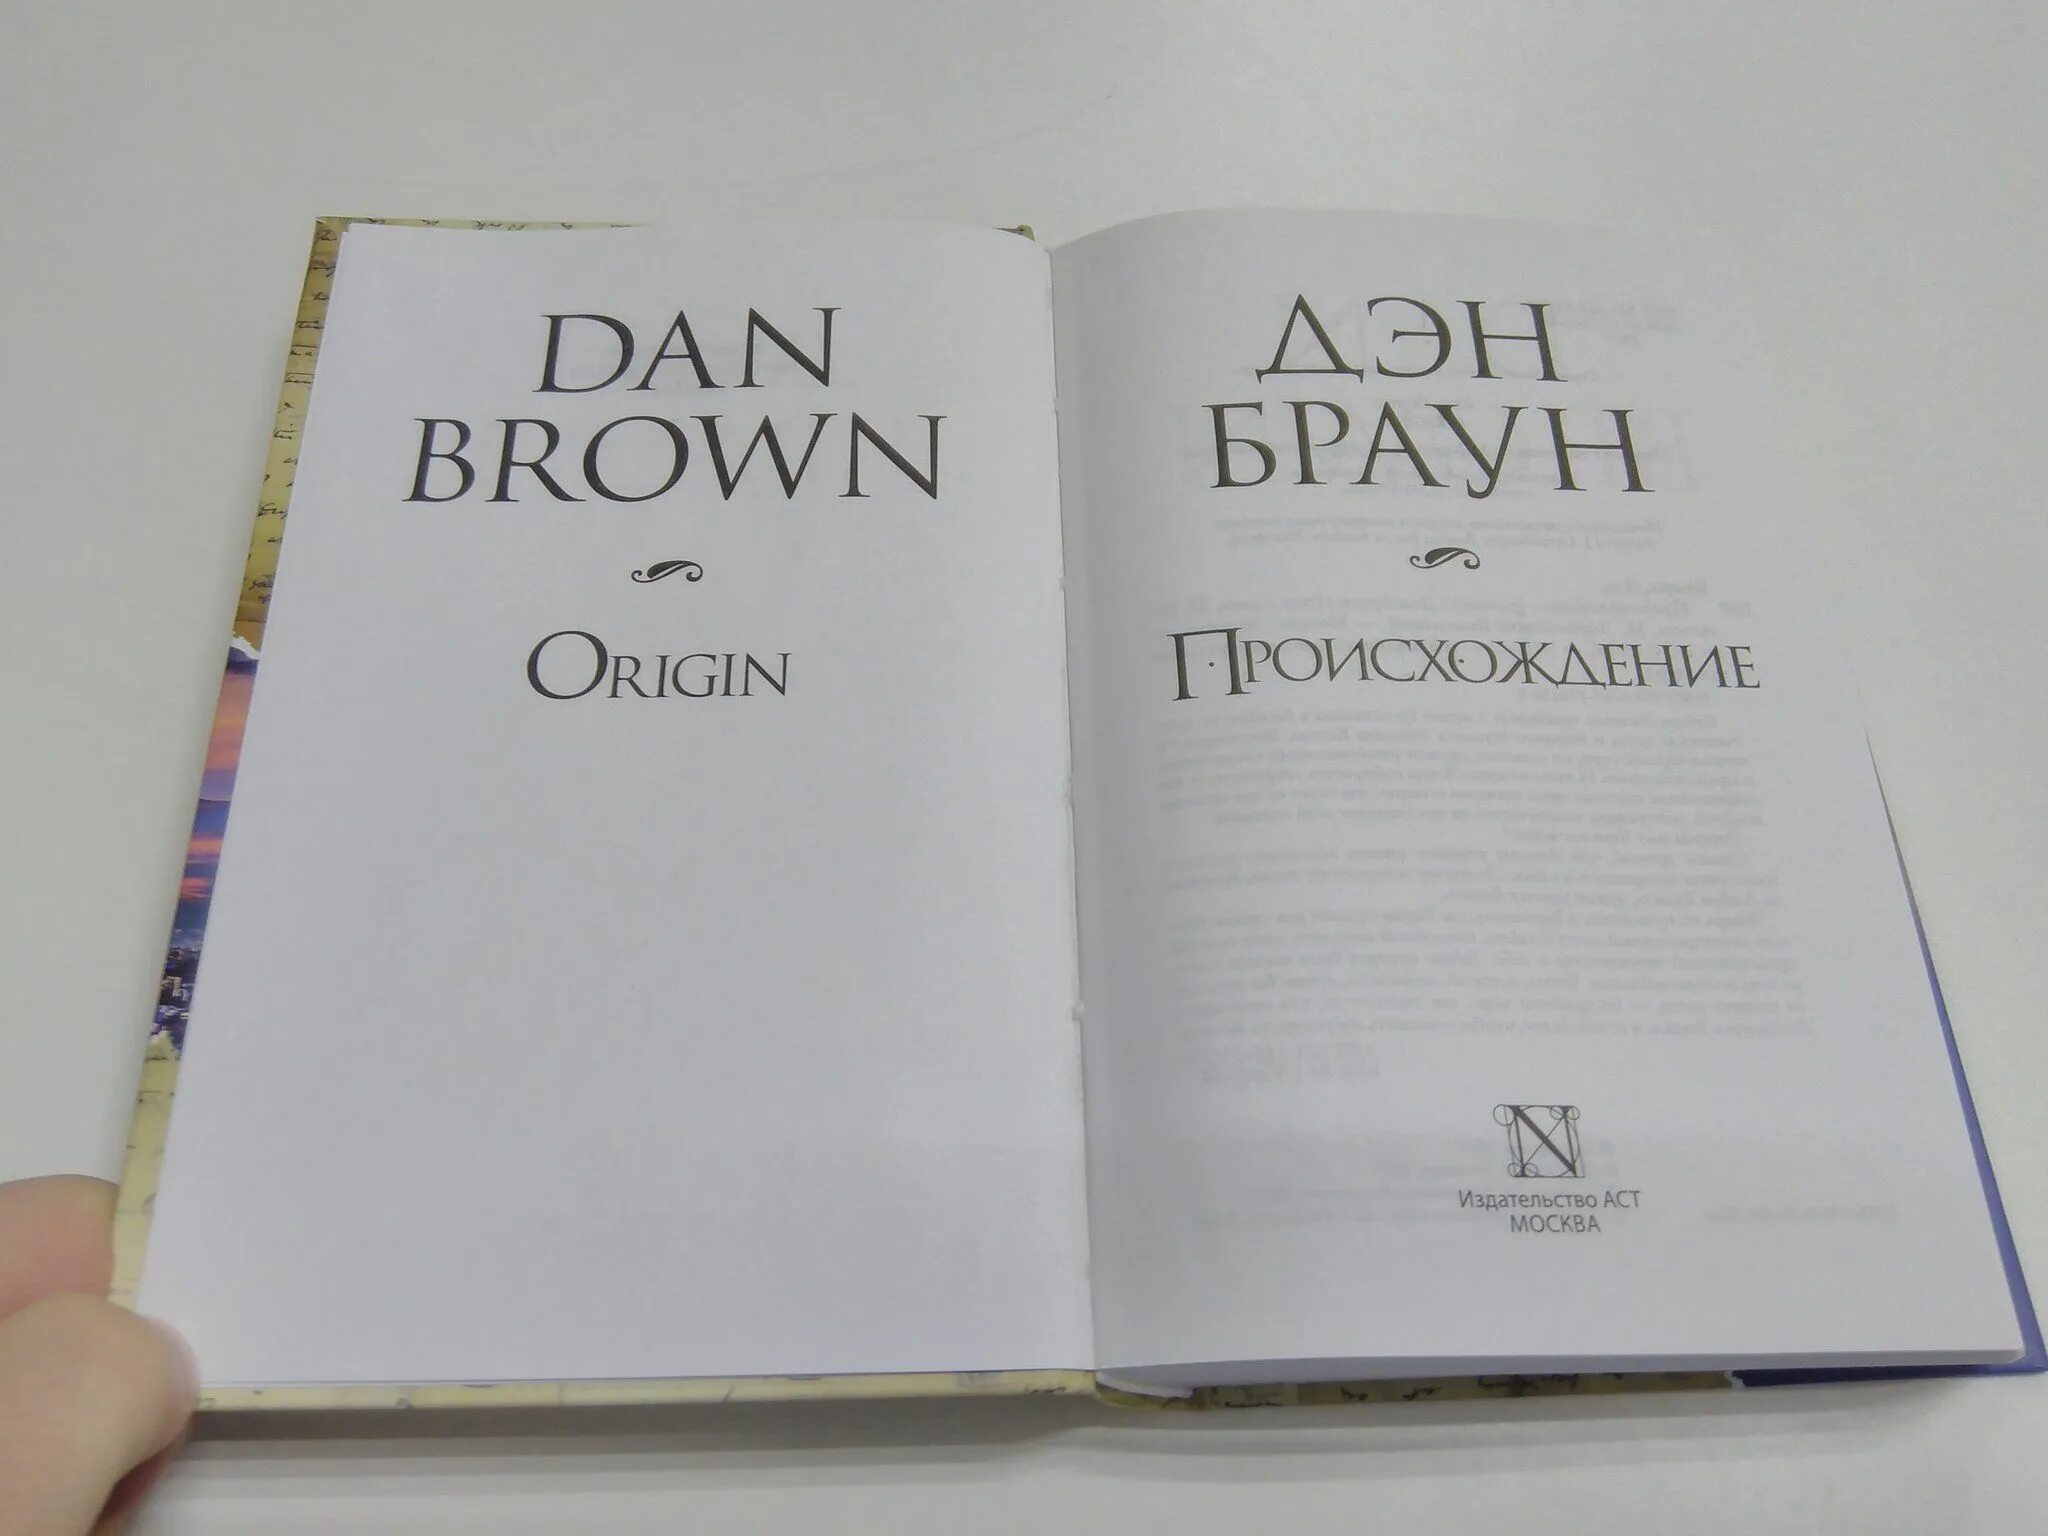 Браун происхождение читать. Дэн Браун "происхождение". Происхождение Дэн Браун книга. Дэн Браун происхождение Издательство АСТ. Происхождение z Дэн Браун.